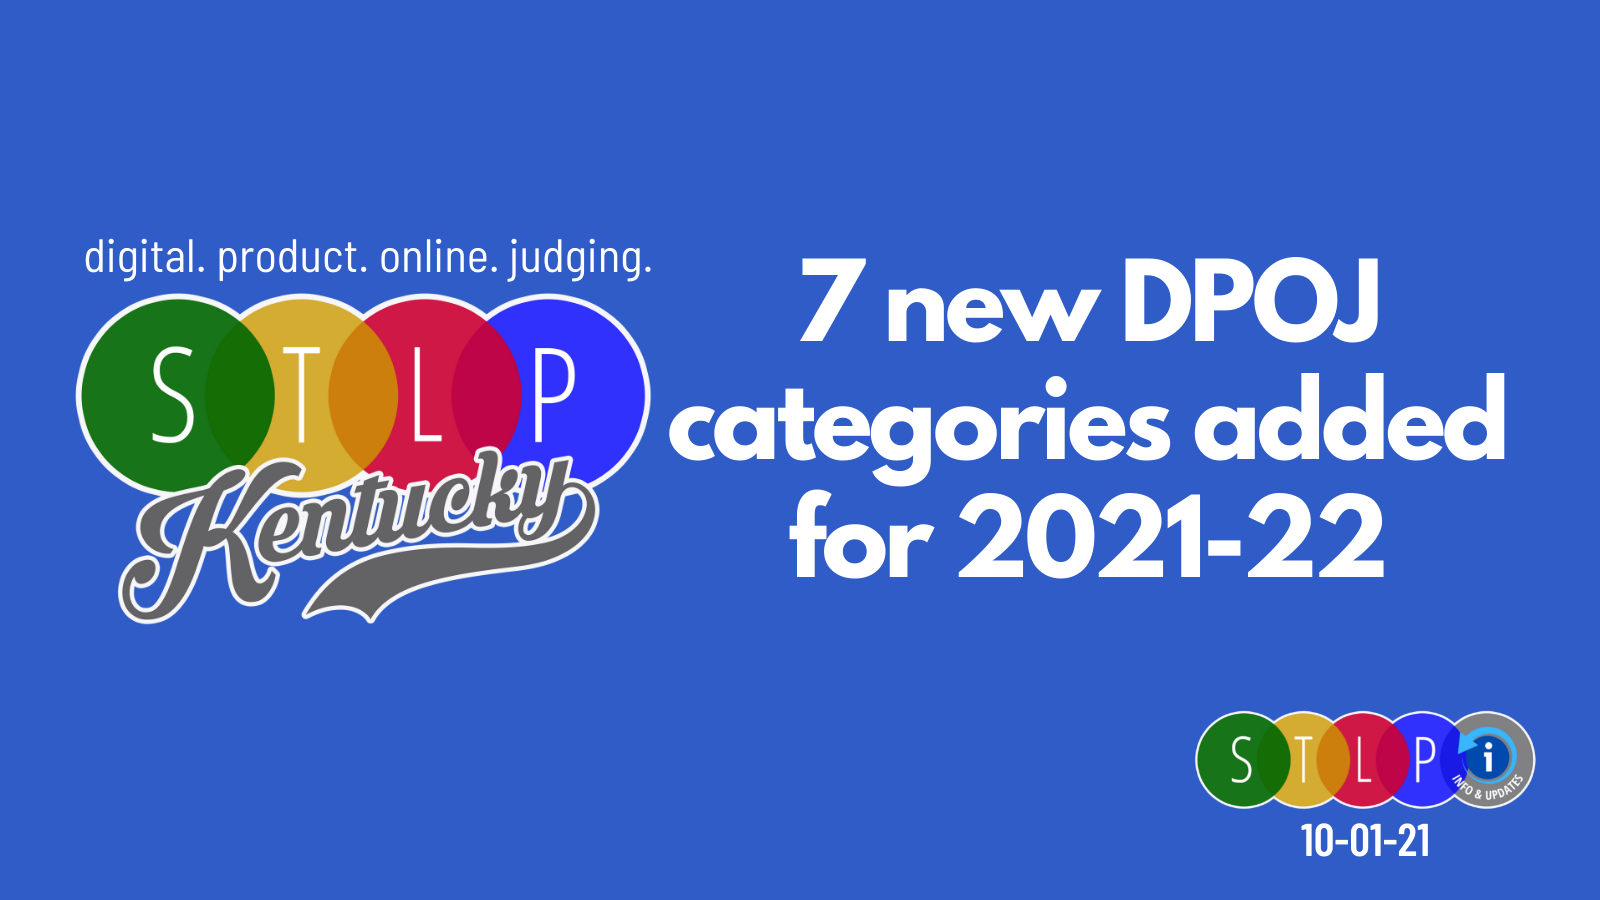 new DPOJ categories announced